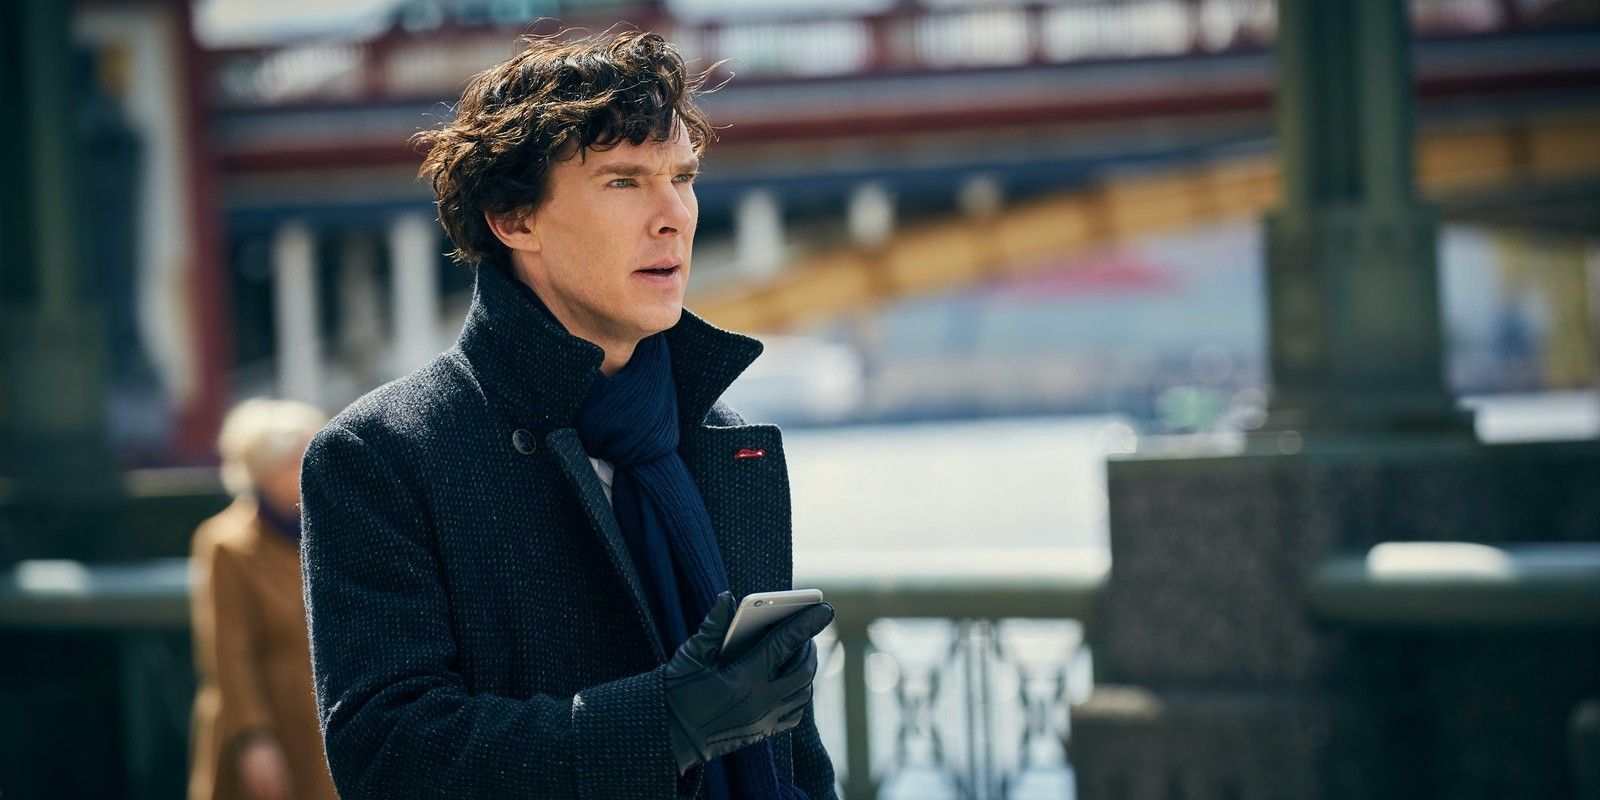 Sherlock Holmes in the BBC's Sherlock, standing outside in a black coat.